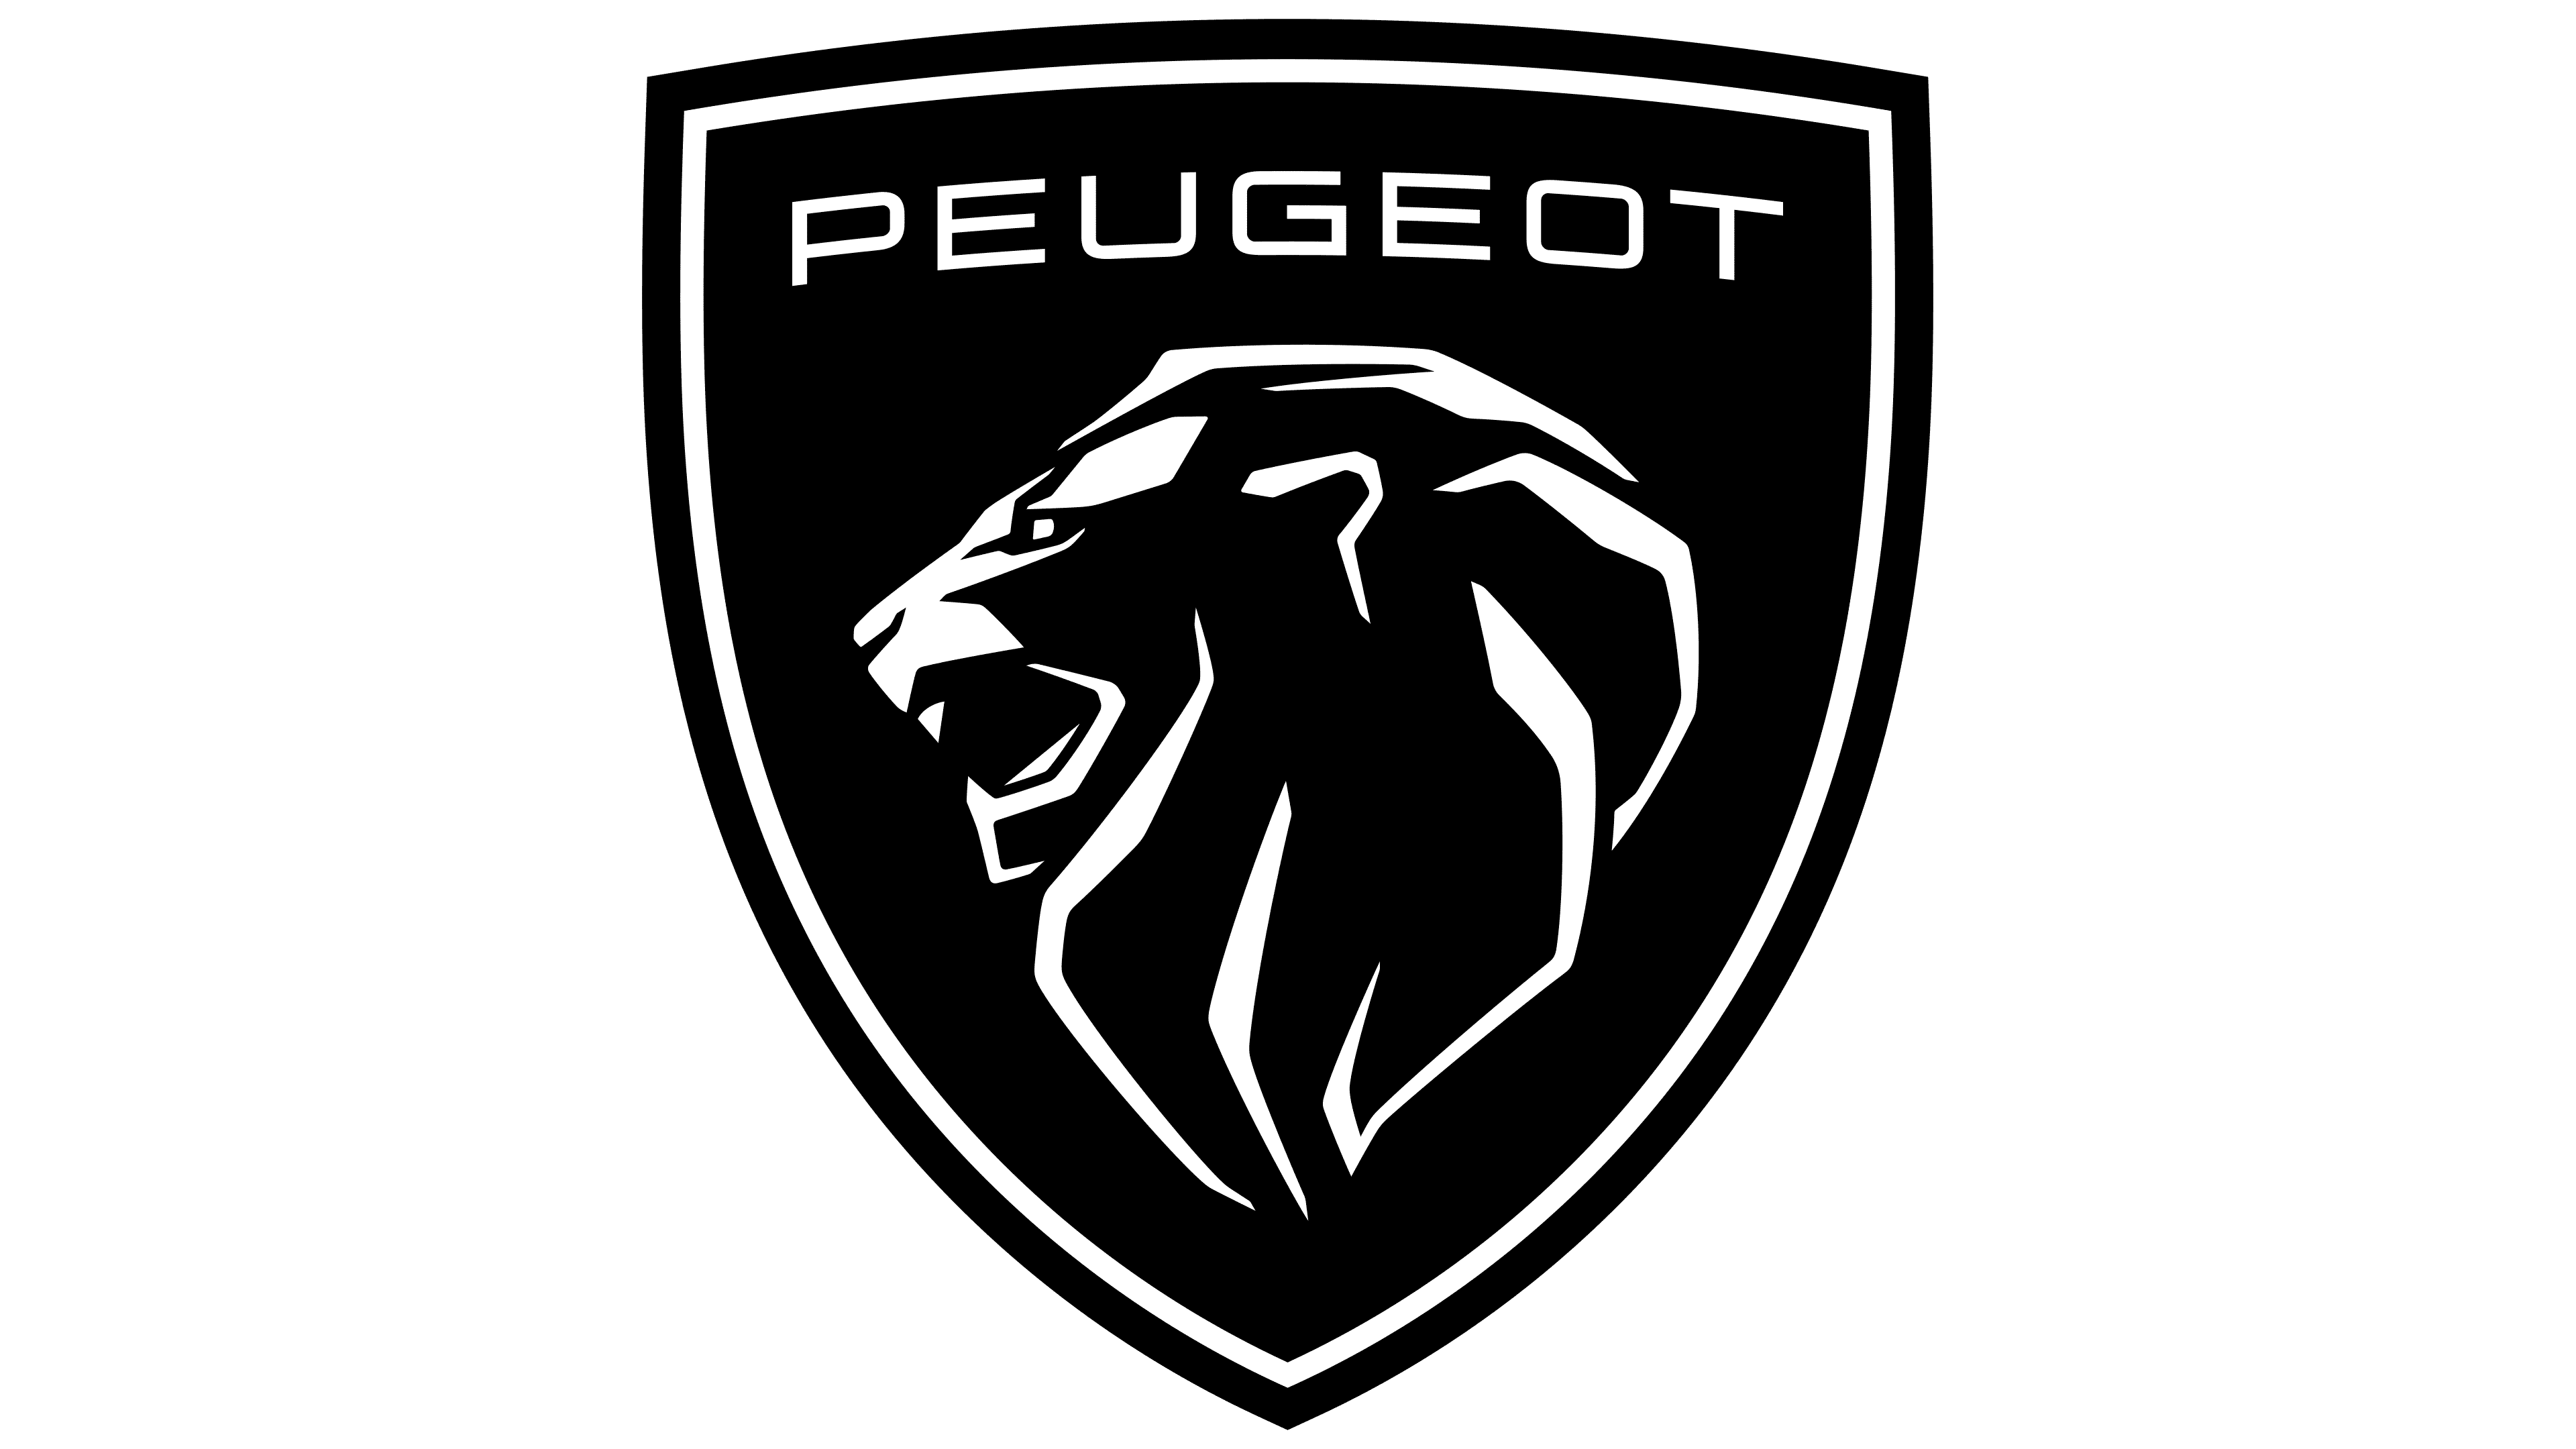 Certificaat van Overeenstemming Peugeot